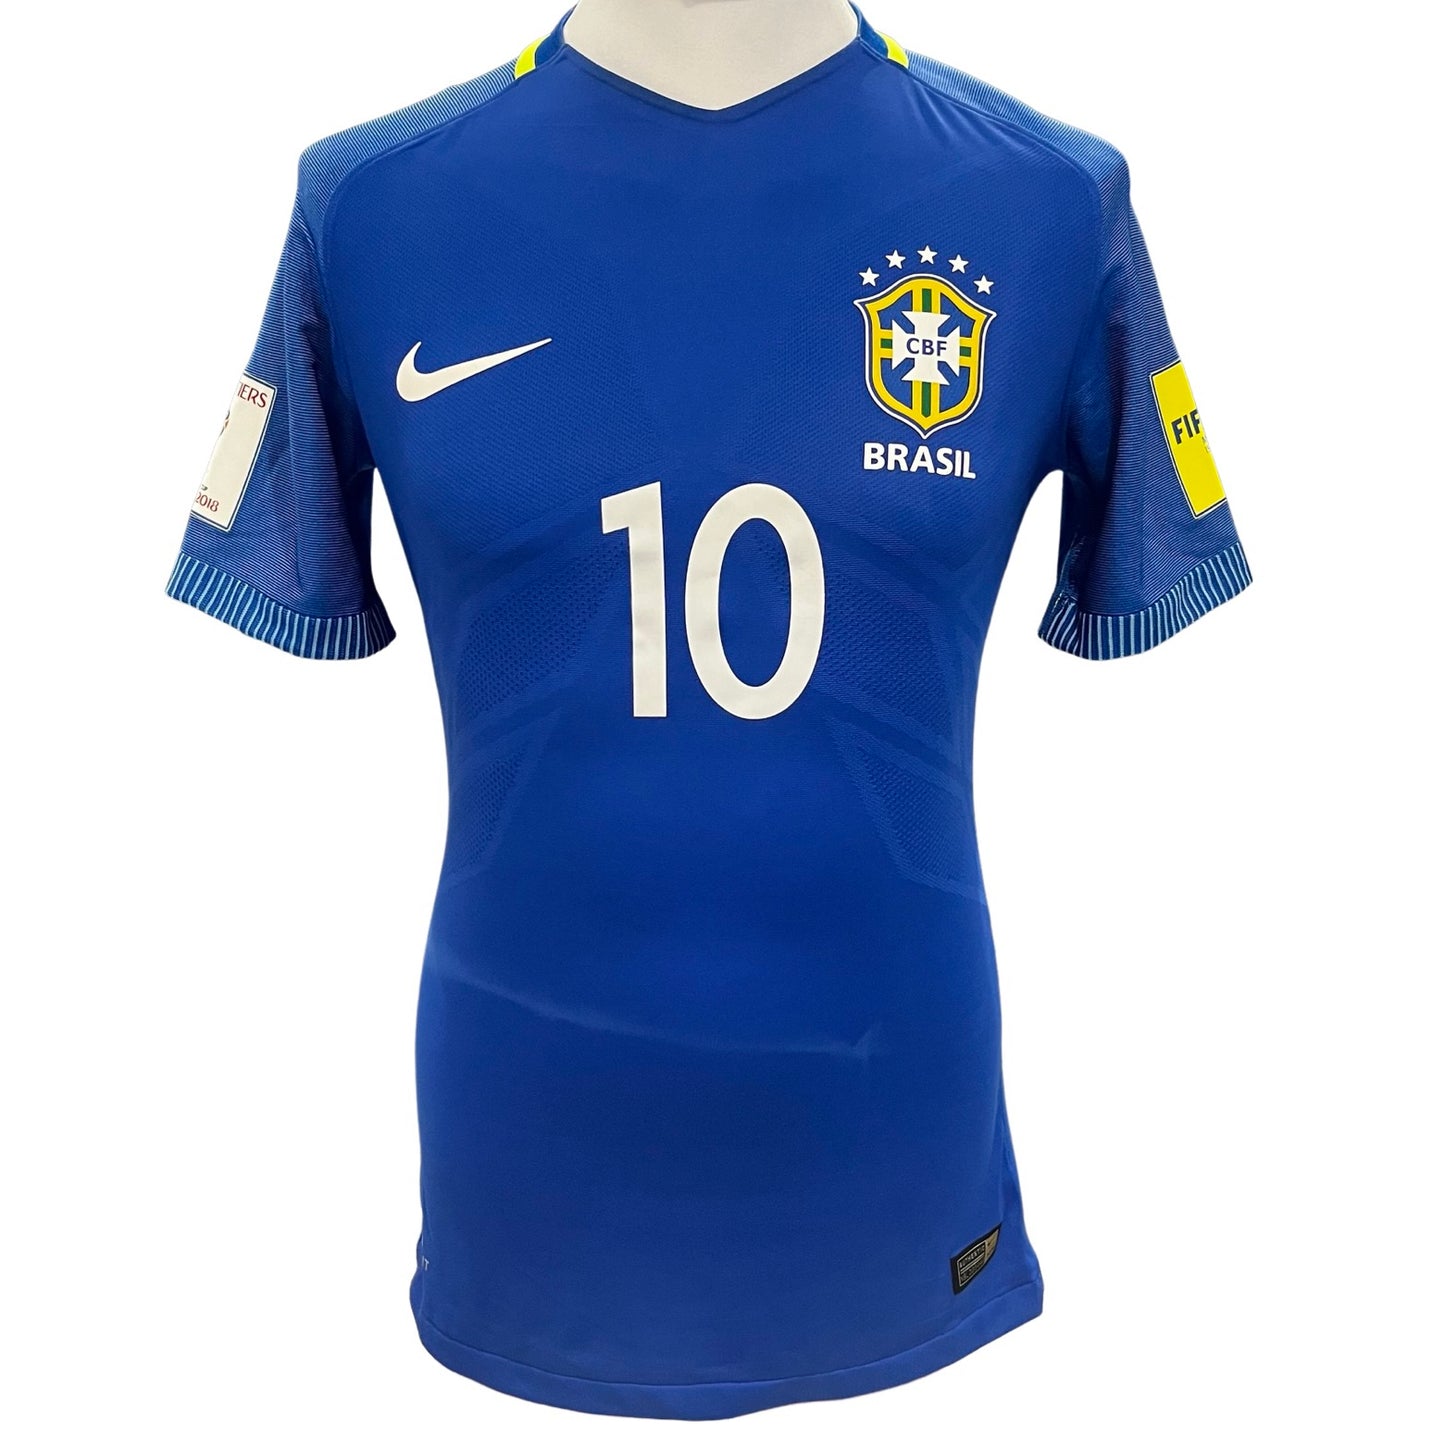 نيمار Jr مباراة البالية نايك دريف صالح قميص البرازيل مقابل الاكوادور 2018 فيفا كأس العالم كواليفر